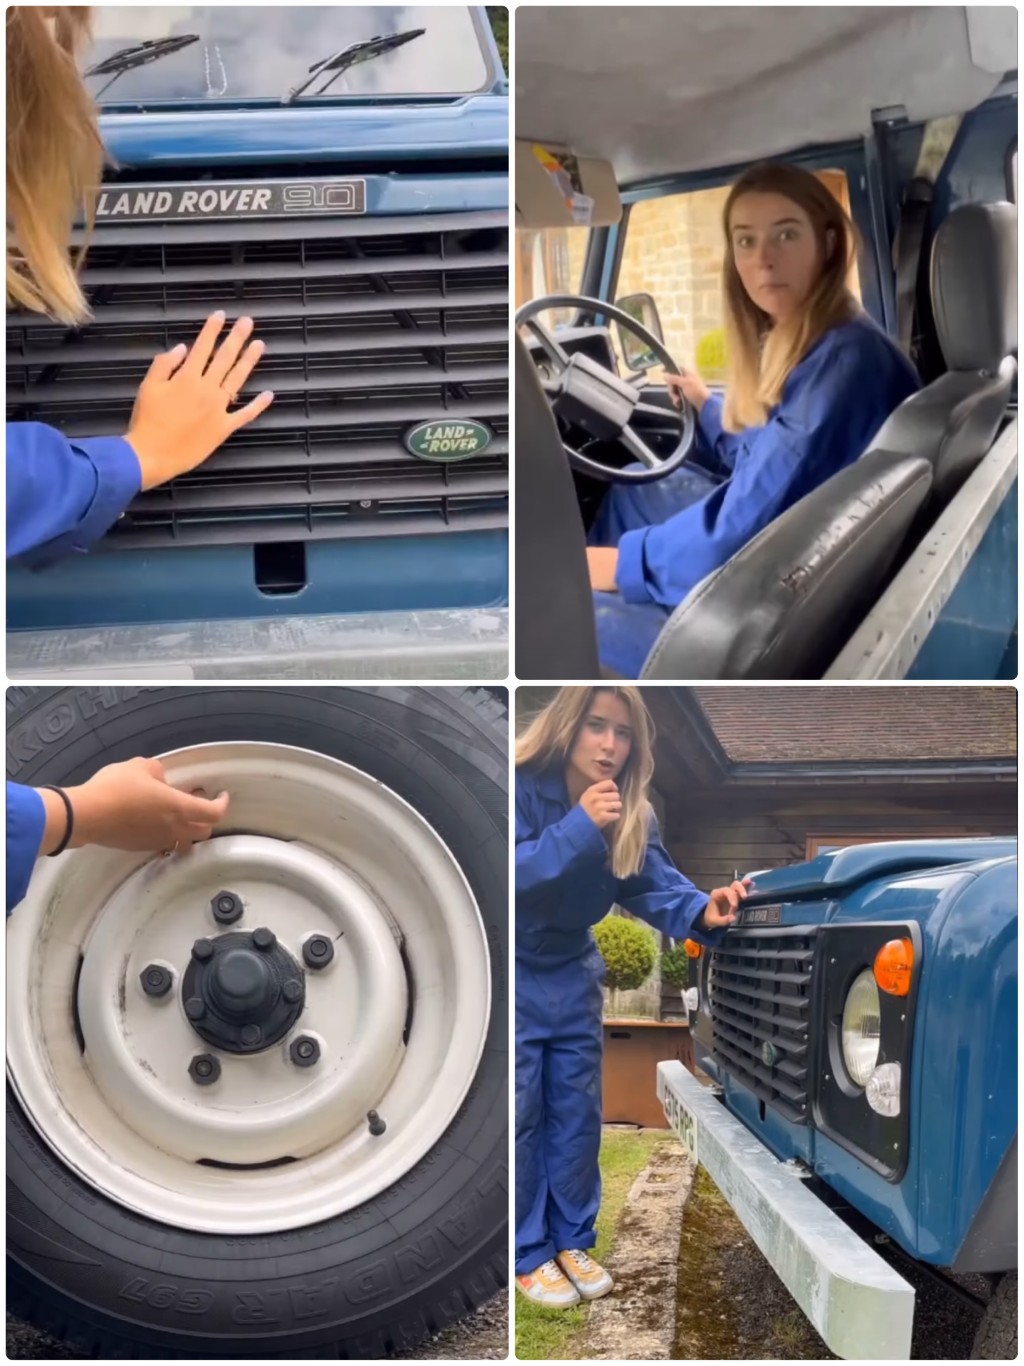 宾利ASMR广告路虎版，拍摄者因开引擎导致全车震动而露出搞笑表情。 Youtube